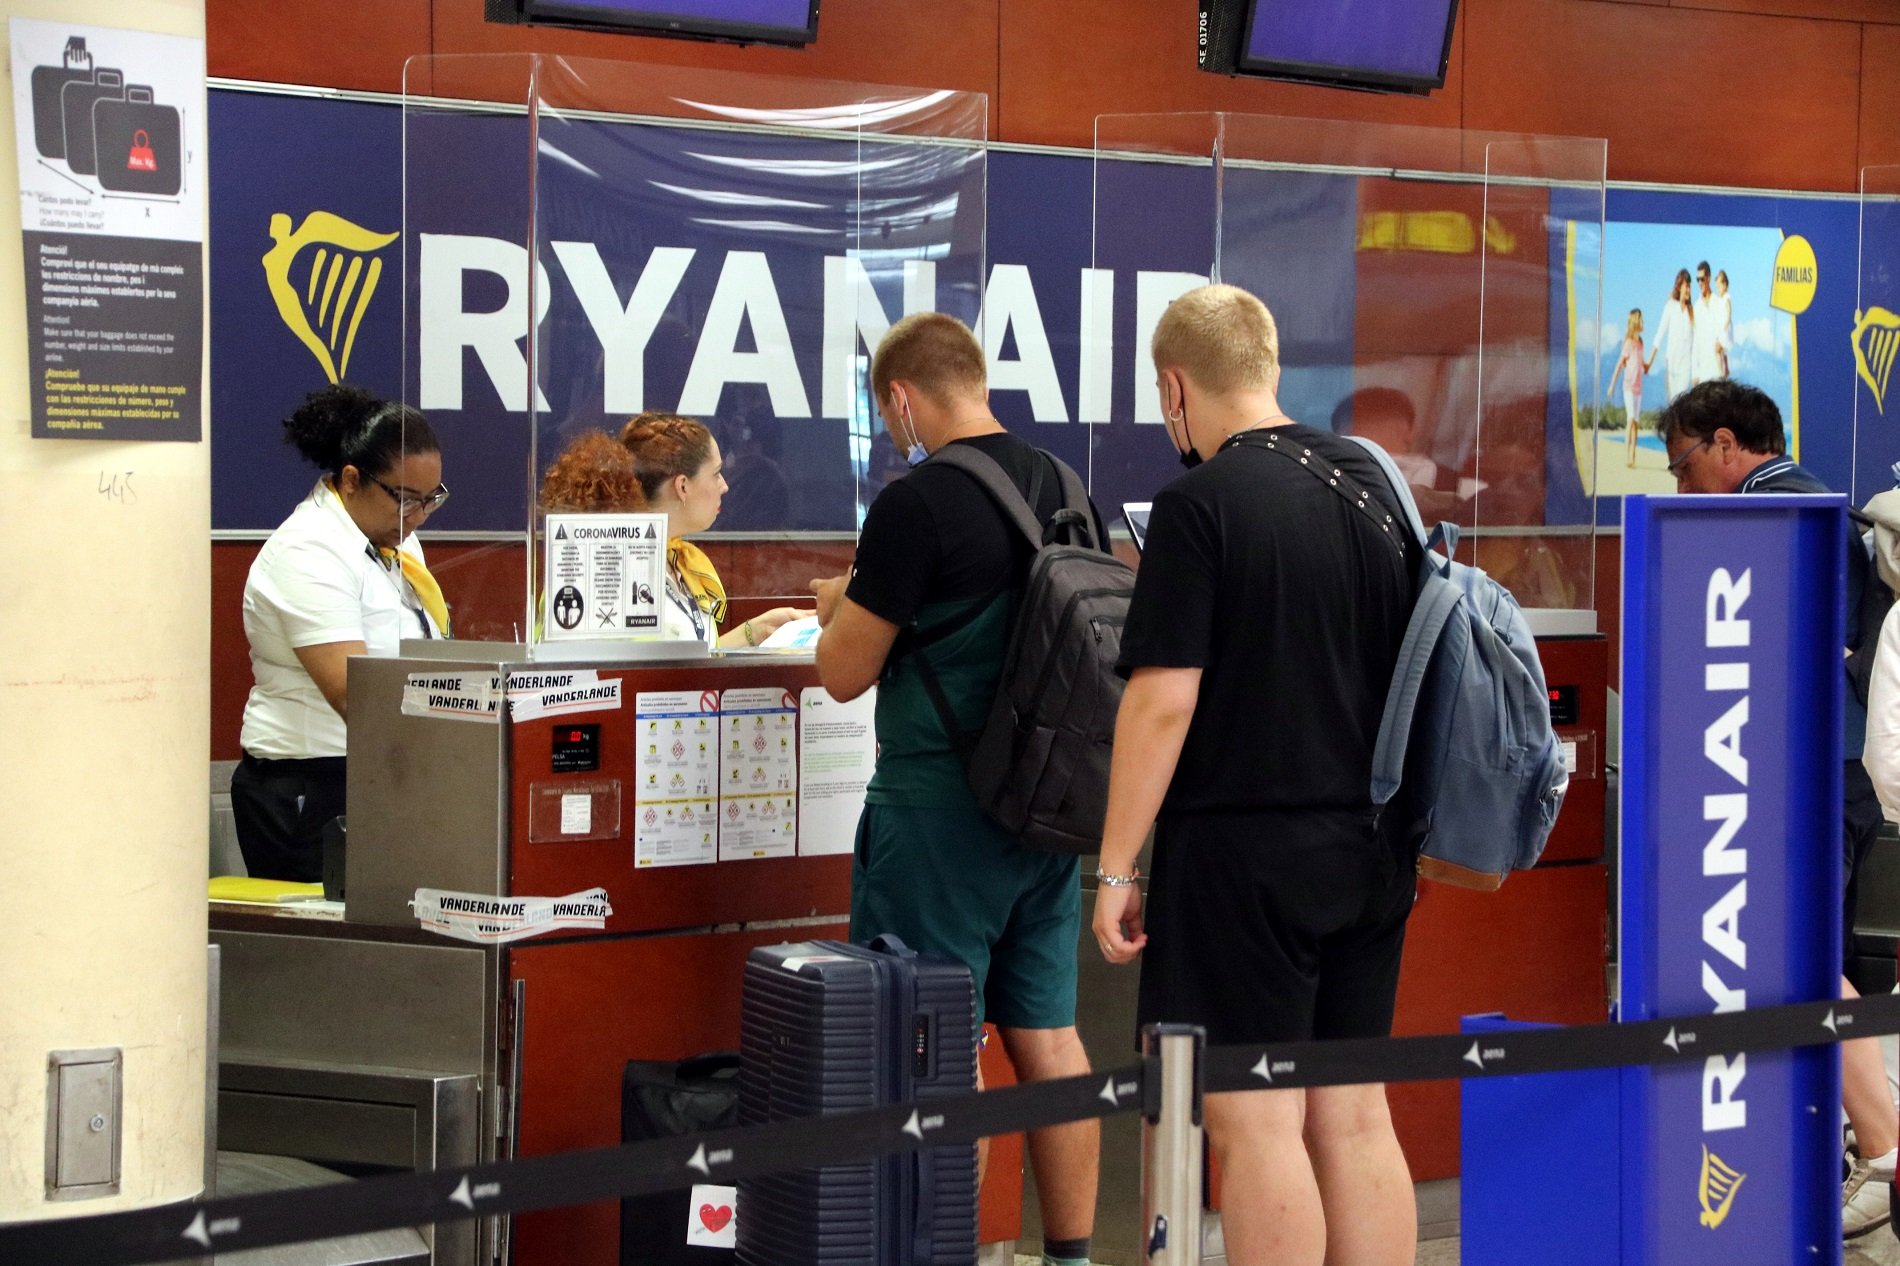 Vaga a Ryanair: desconvocada la protesta del personal de terra